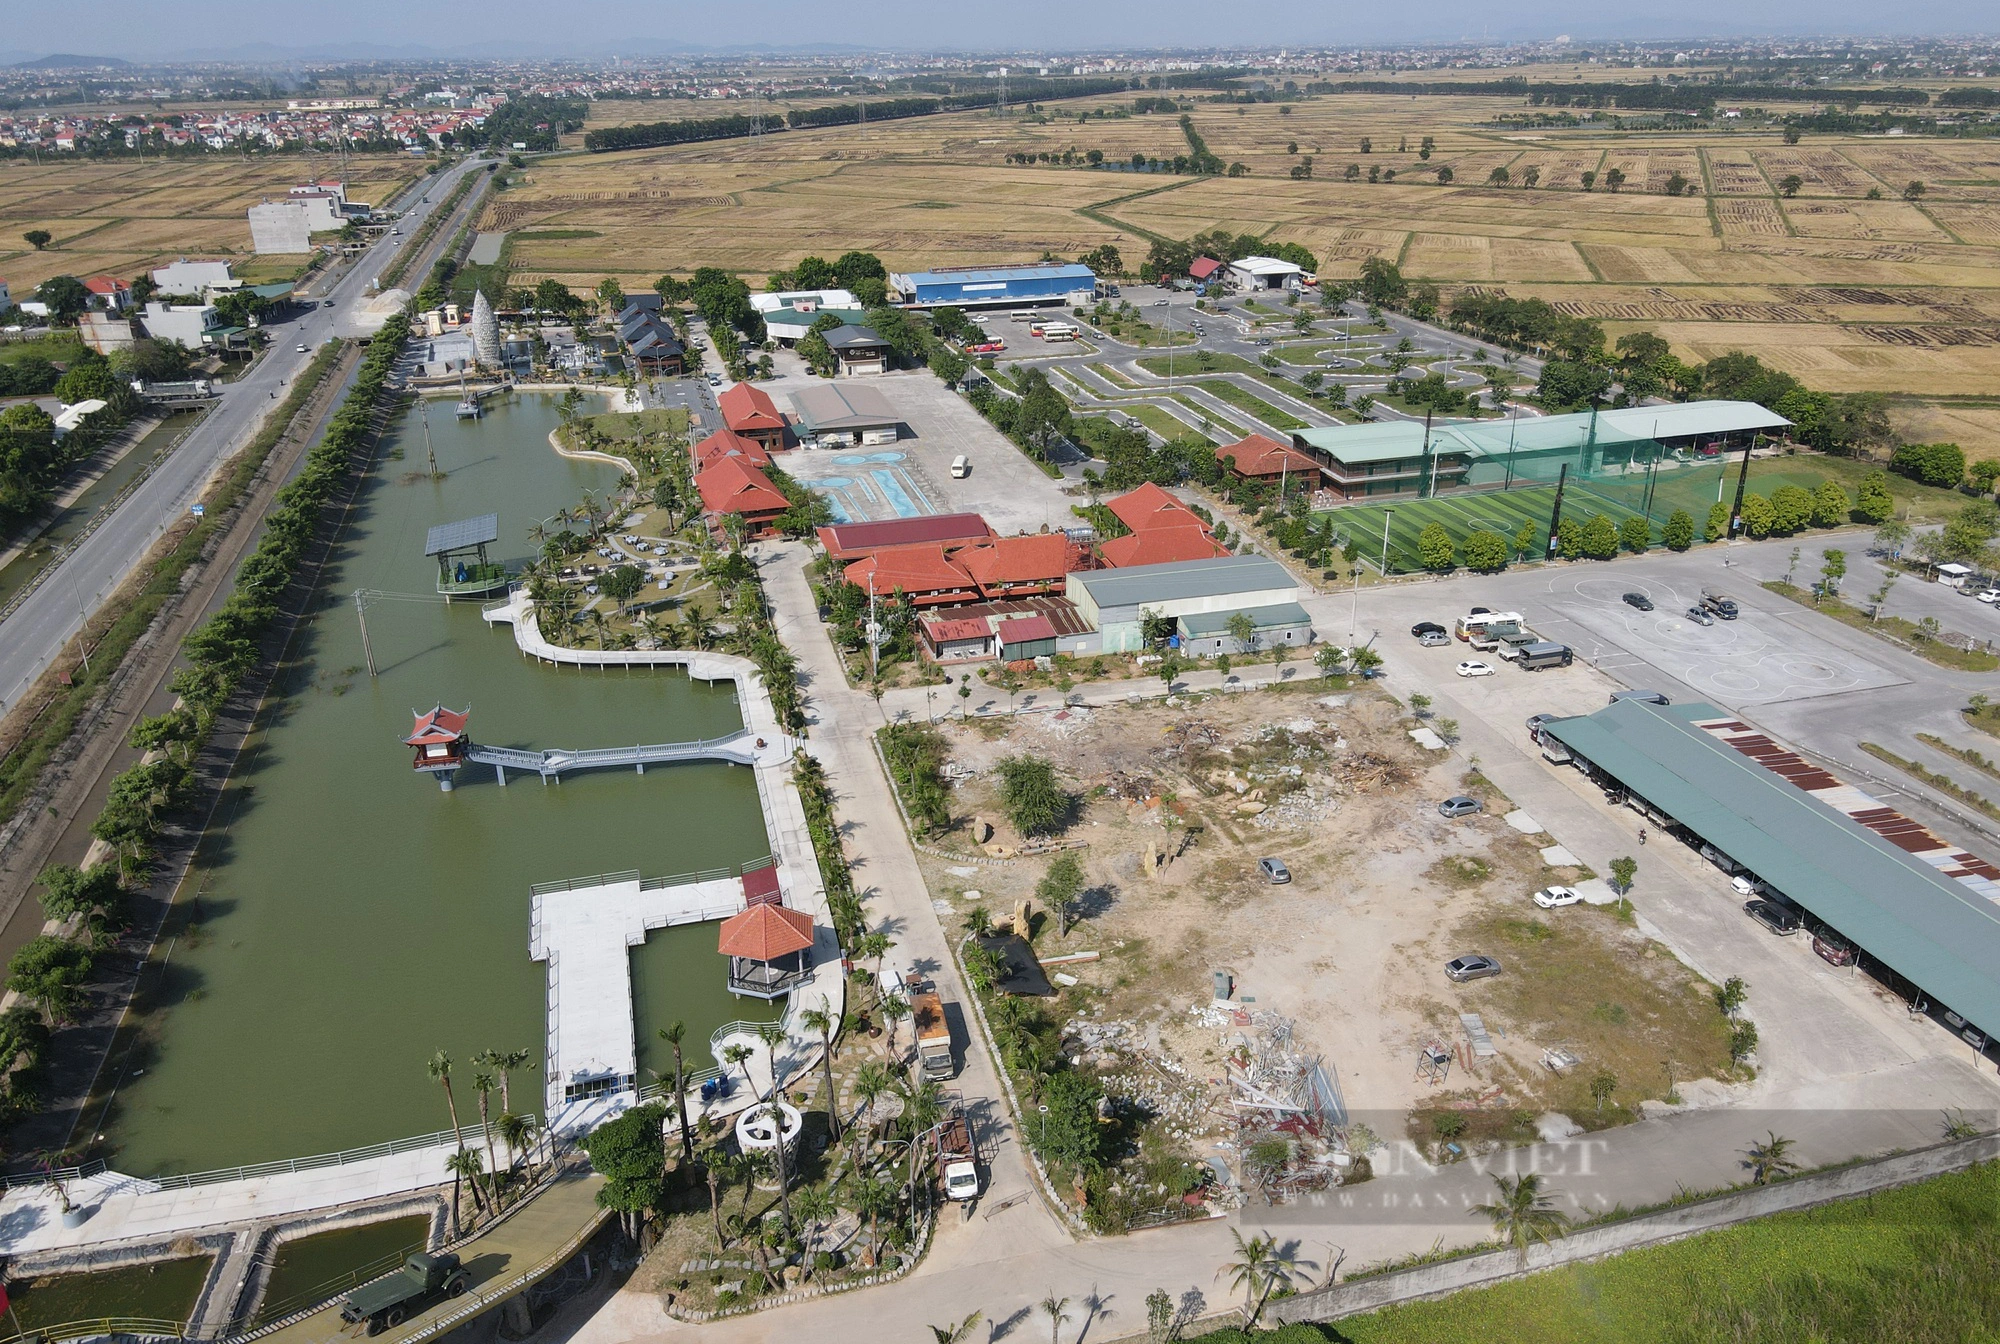 Trung tâm dạy nghề và sát hạch lái xe Đông Đô (Bắc Ninh) sử dụng hàng nghìn m2 đất không đúng mục đích - Ảnh 1.